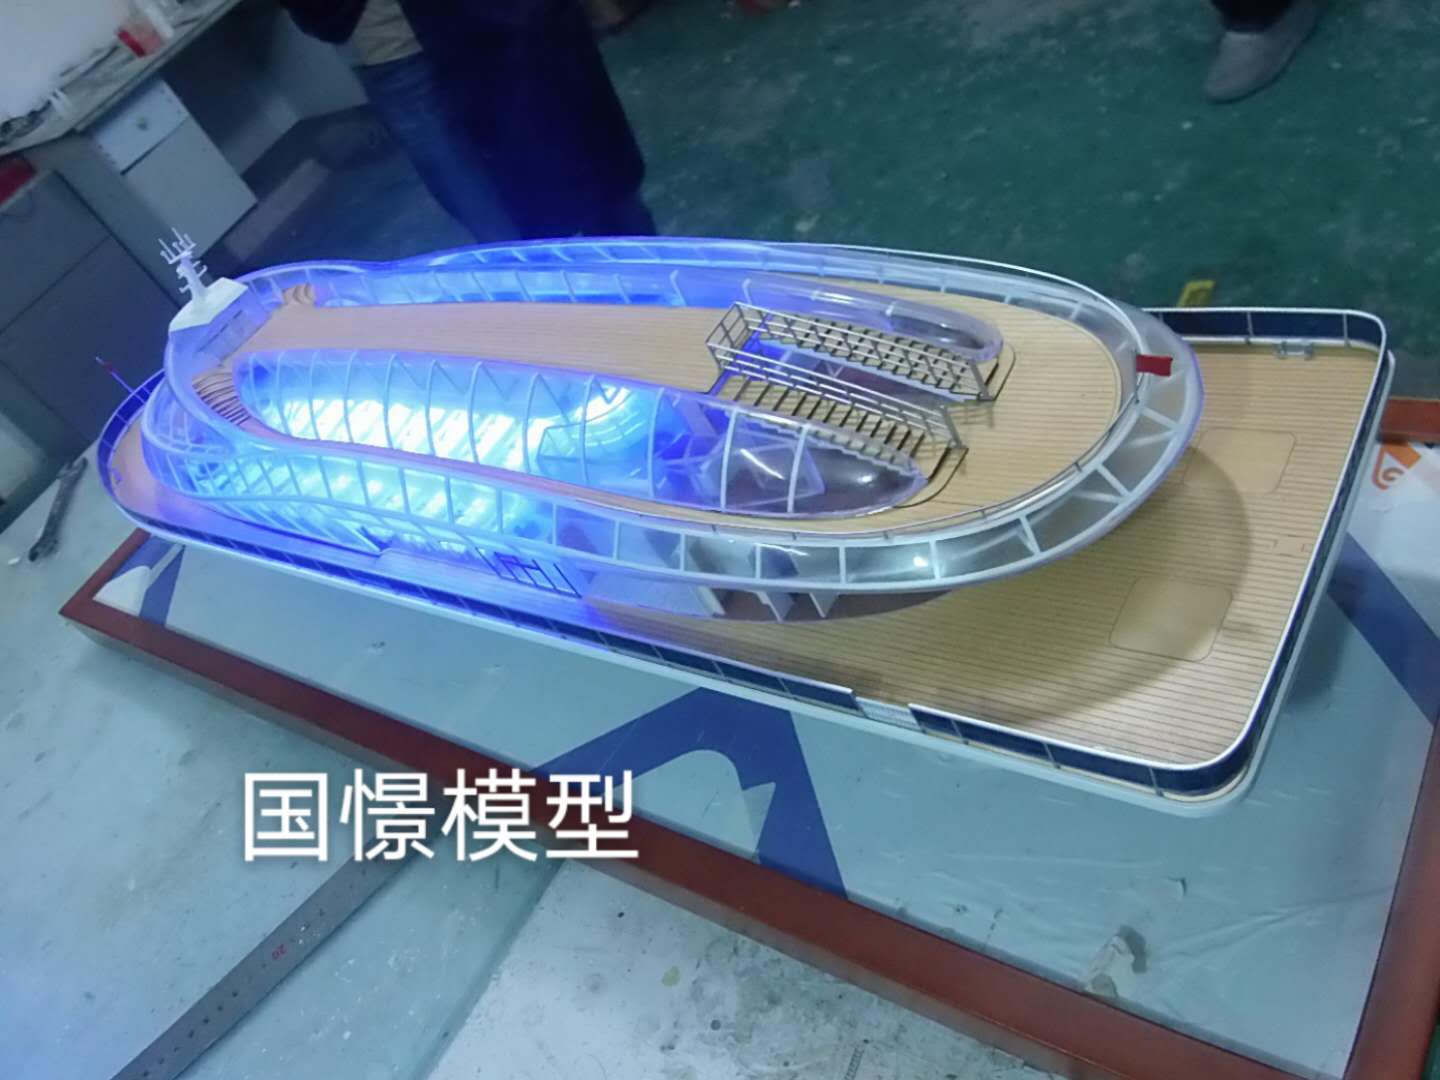 新和县船舶模型